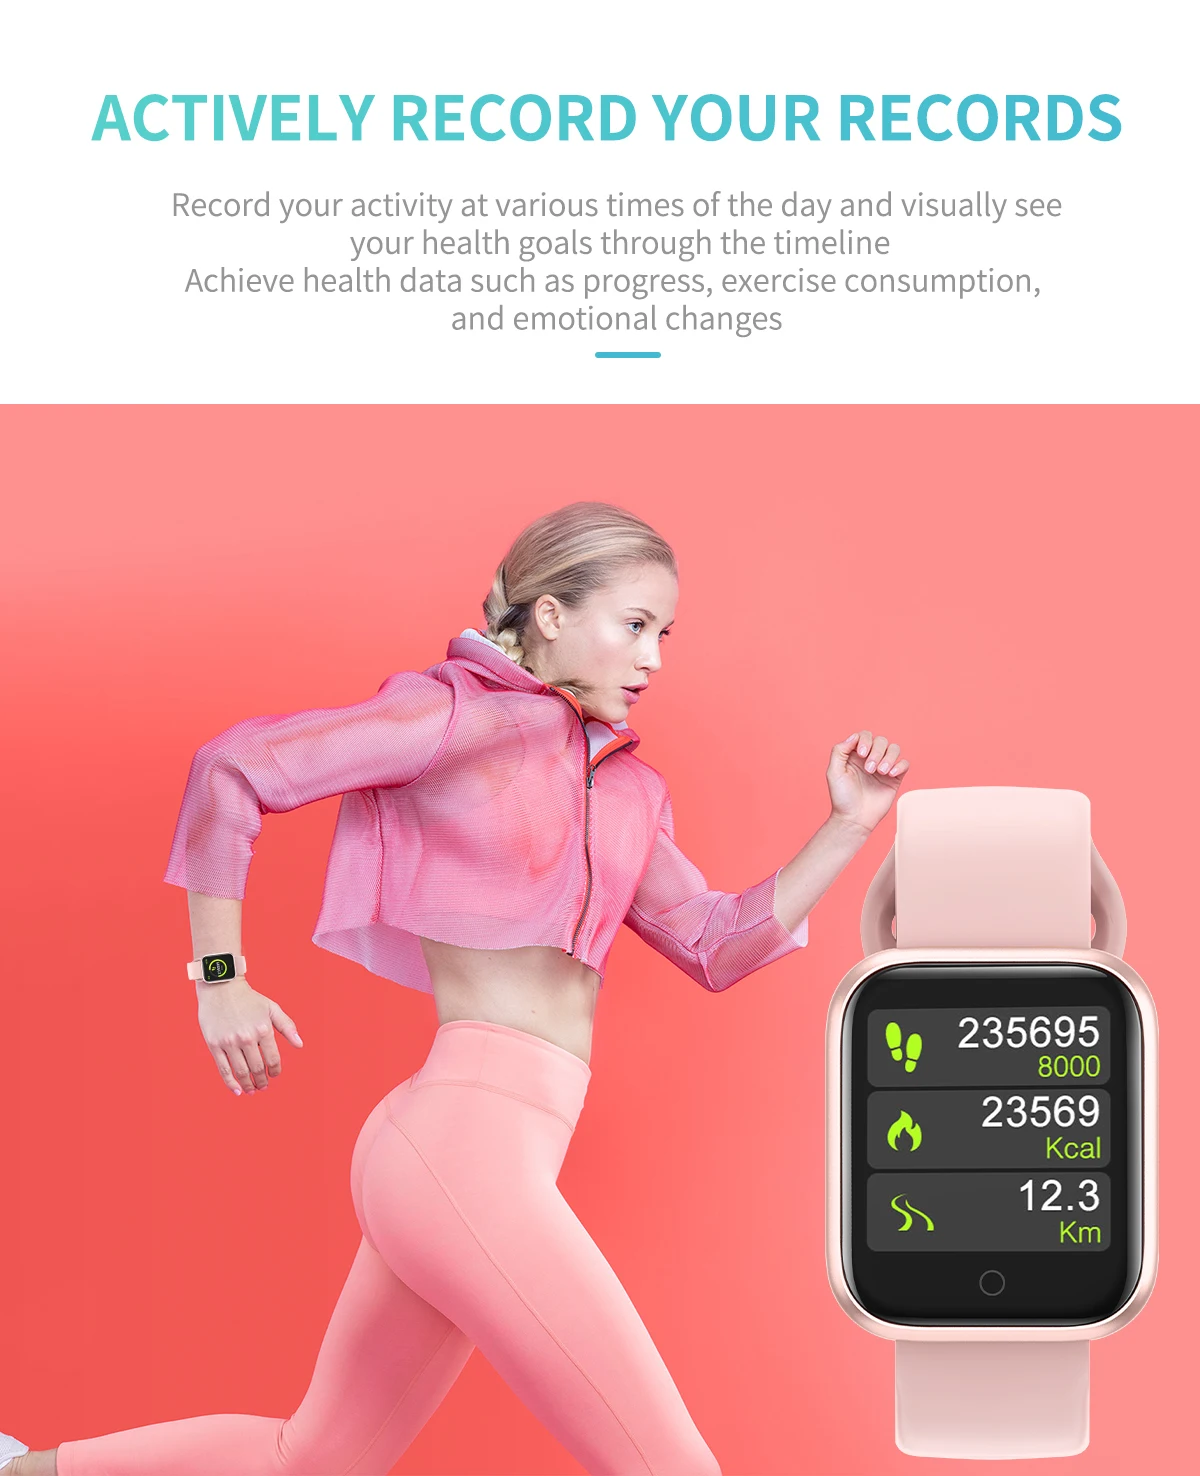 QW21 Смарт-часы ремешок может заменить IP67 Водонепроницаемый кровяное давление напоминание пульсометр PK B57 P70 smartwatch